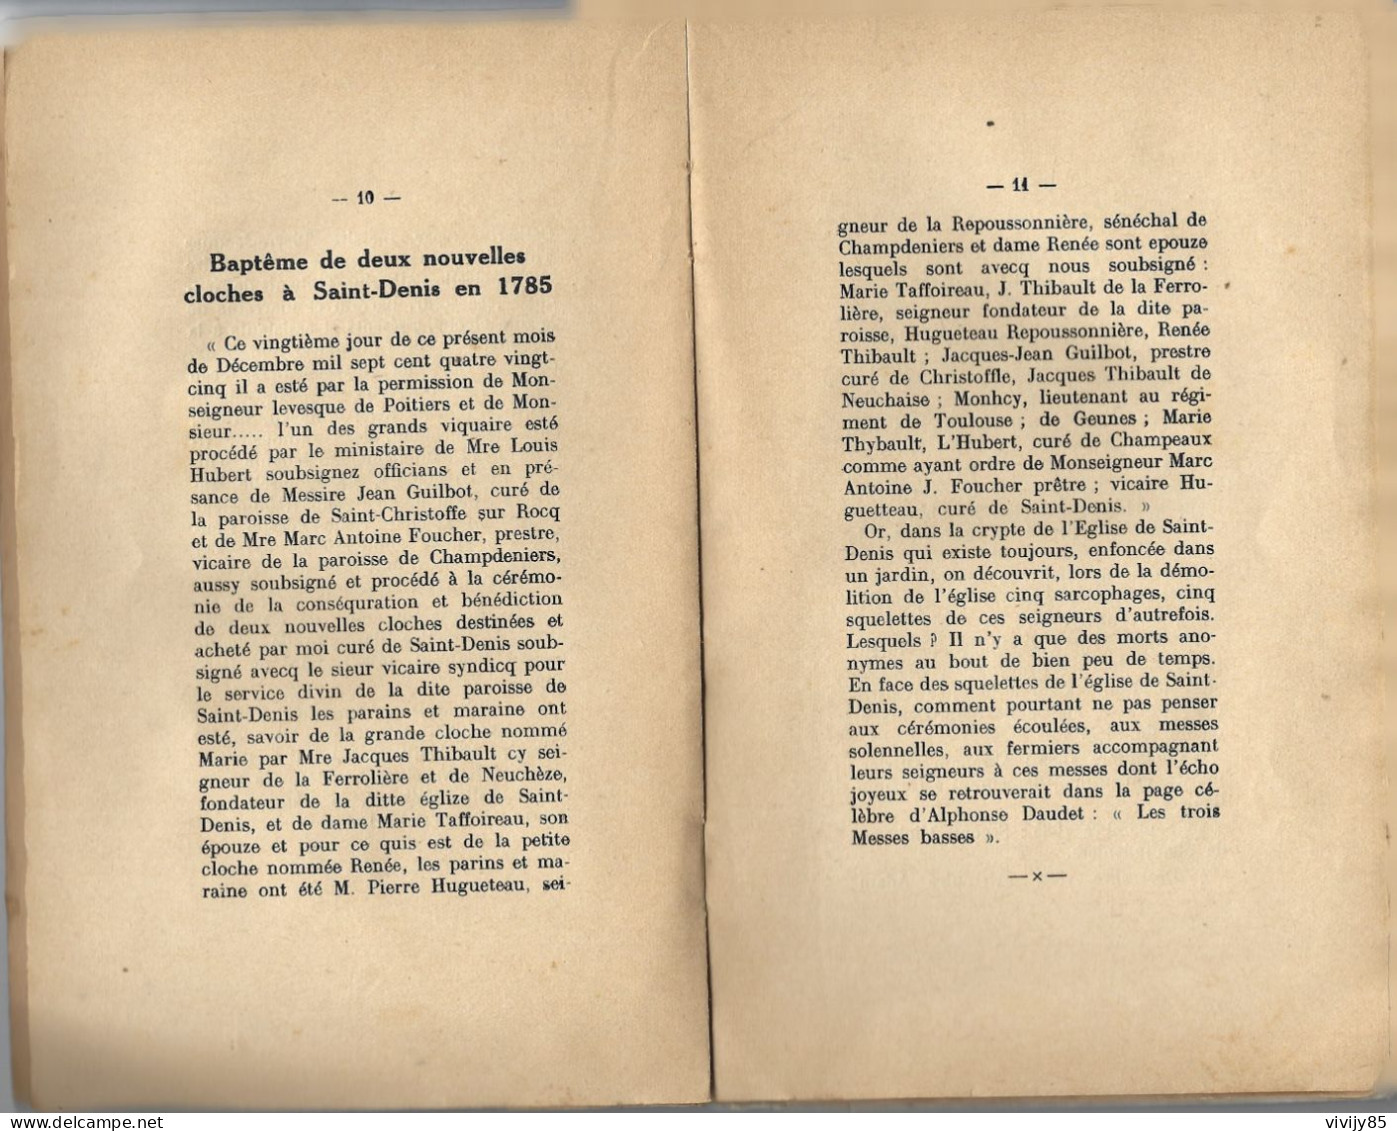 79 -St MAIXENT L' ECOLE- Rare Petit Livre Monographie De St DENIS PUYRAVEAU 1936 - Aquitaine